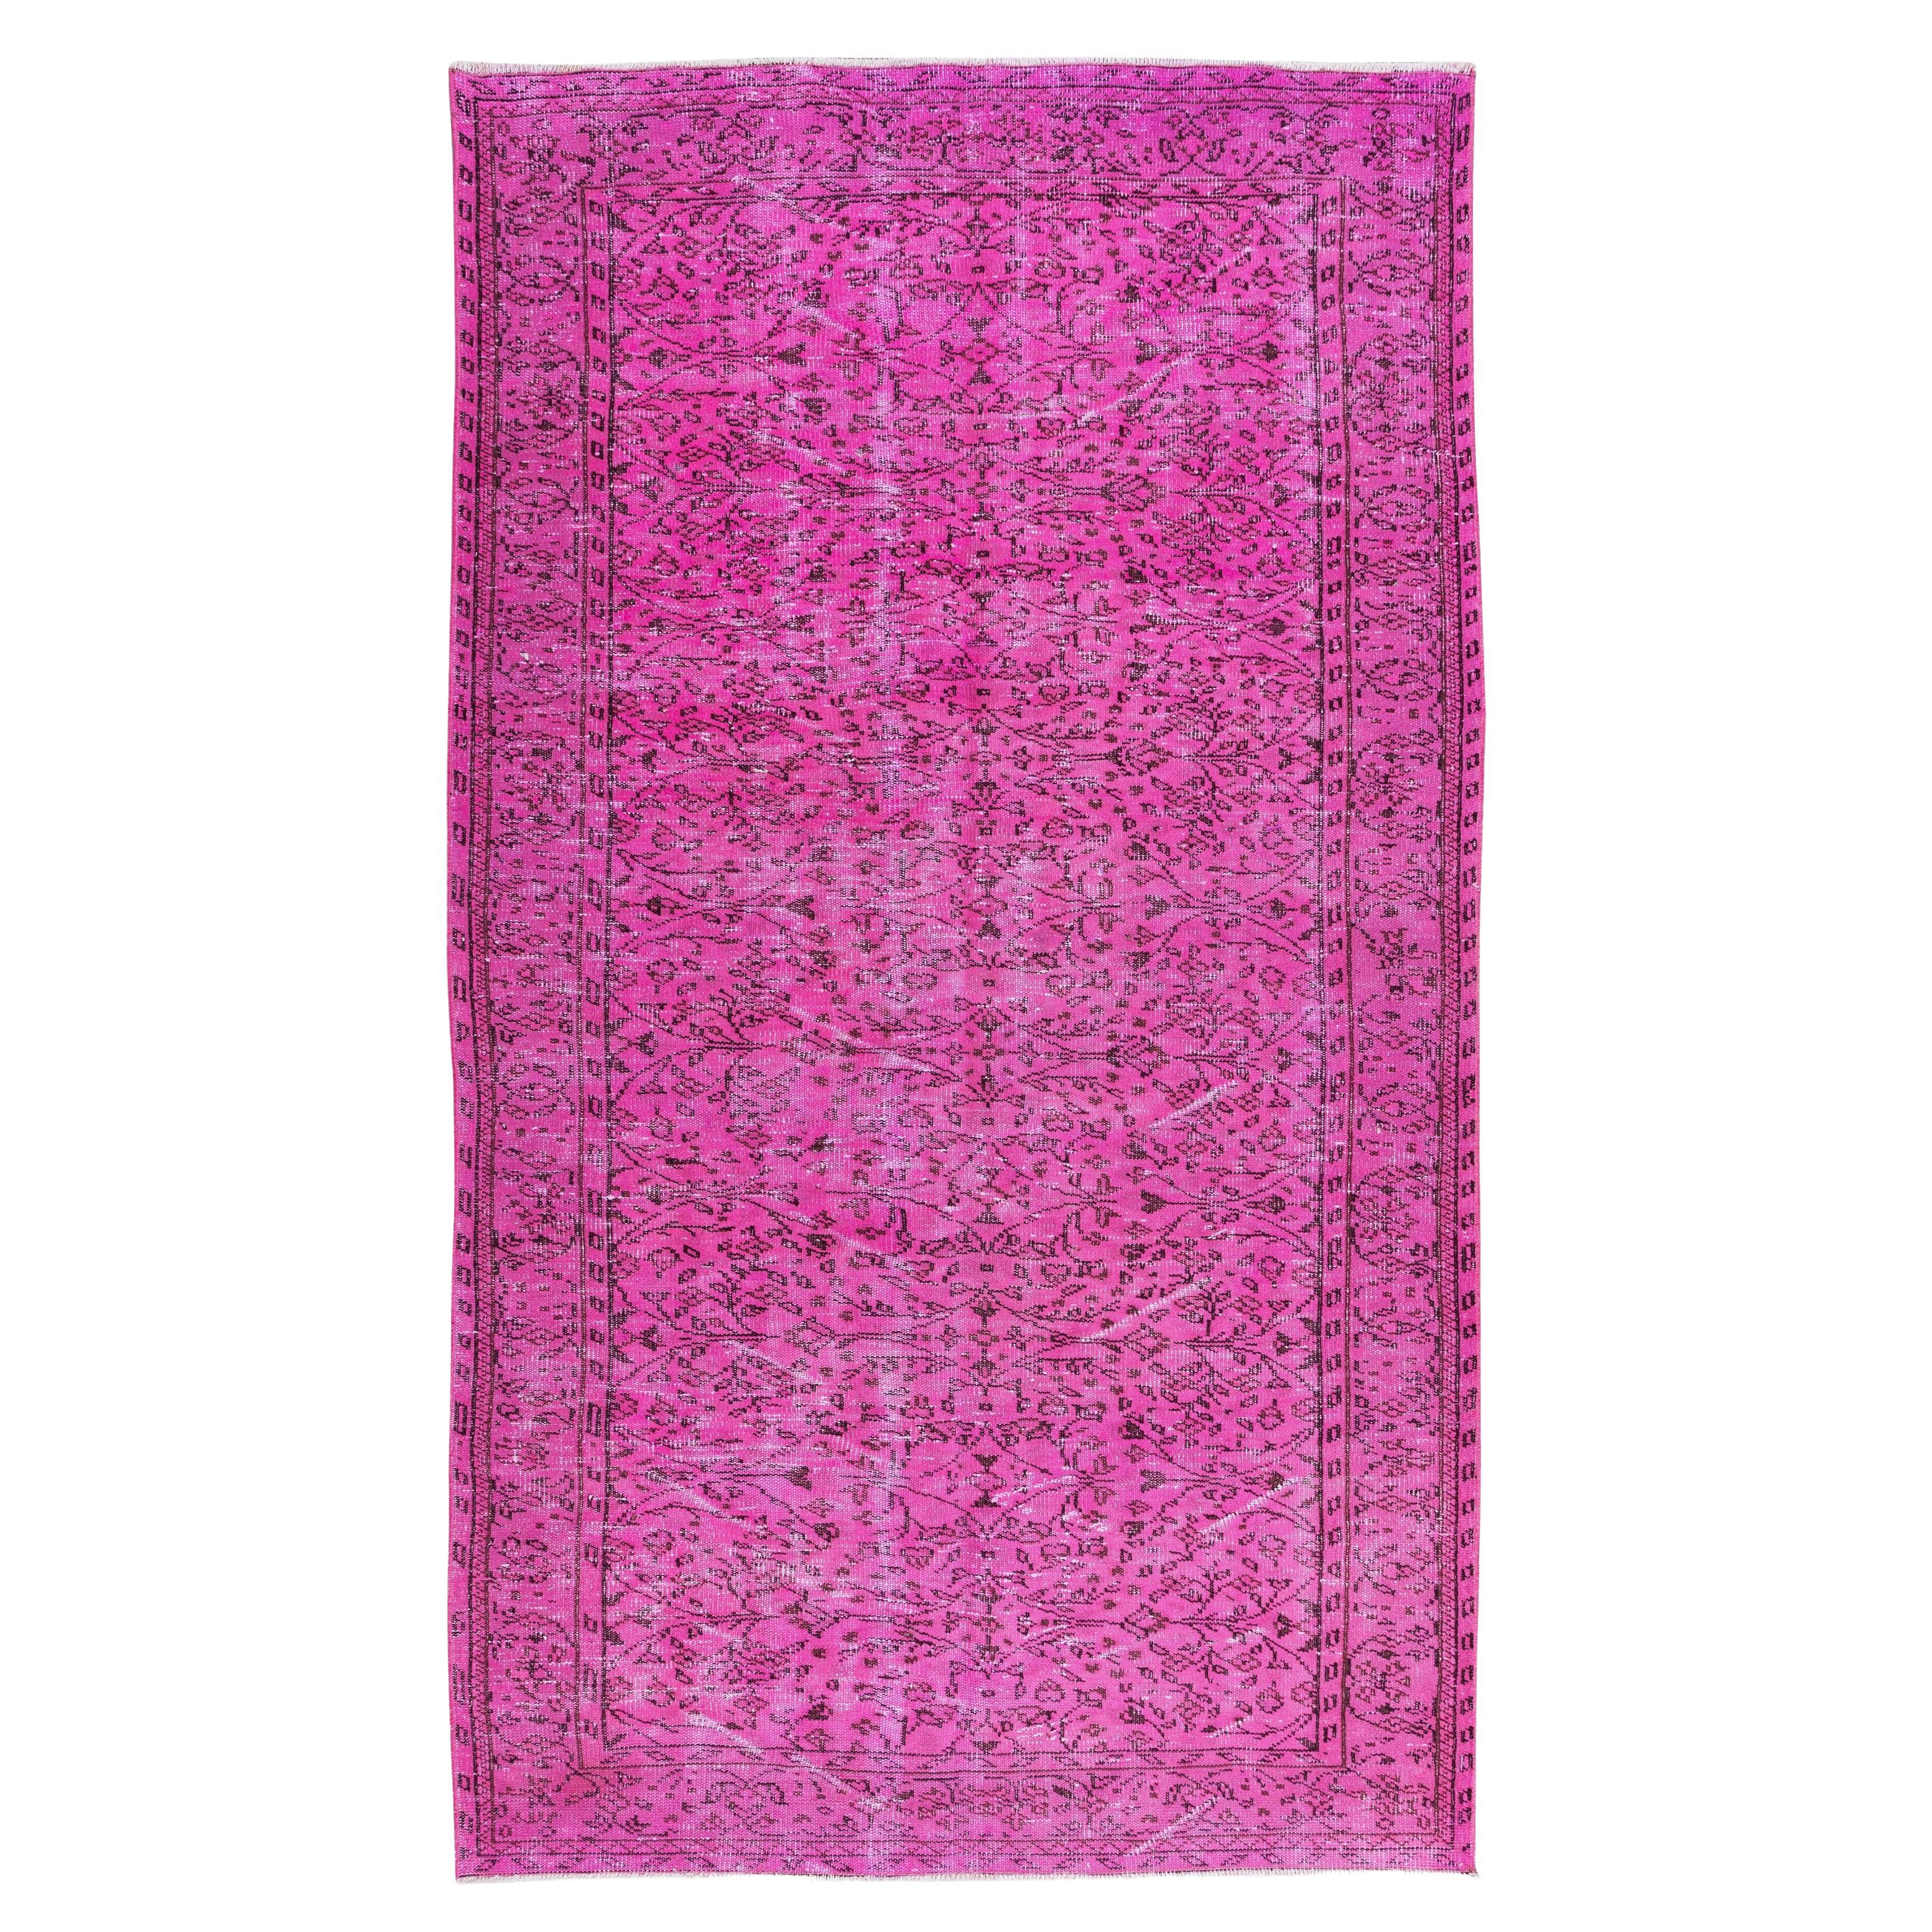 Handgefertigter türkischer Over-Dyed-Teppich im Vintage-Stil in rosa Farbe mit Blumenmuster